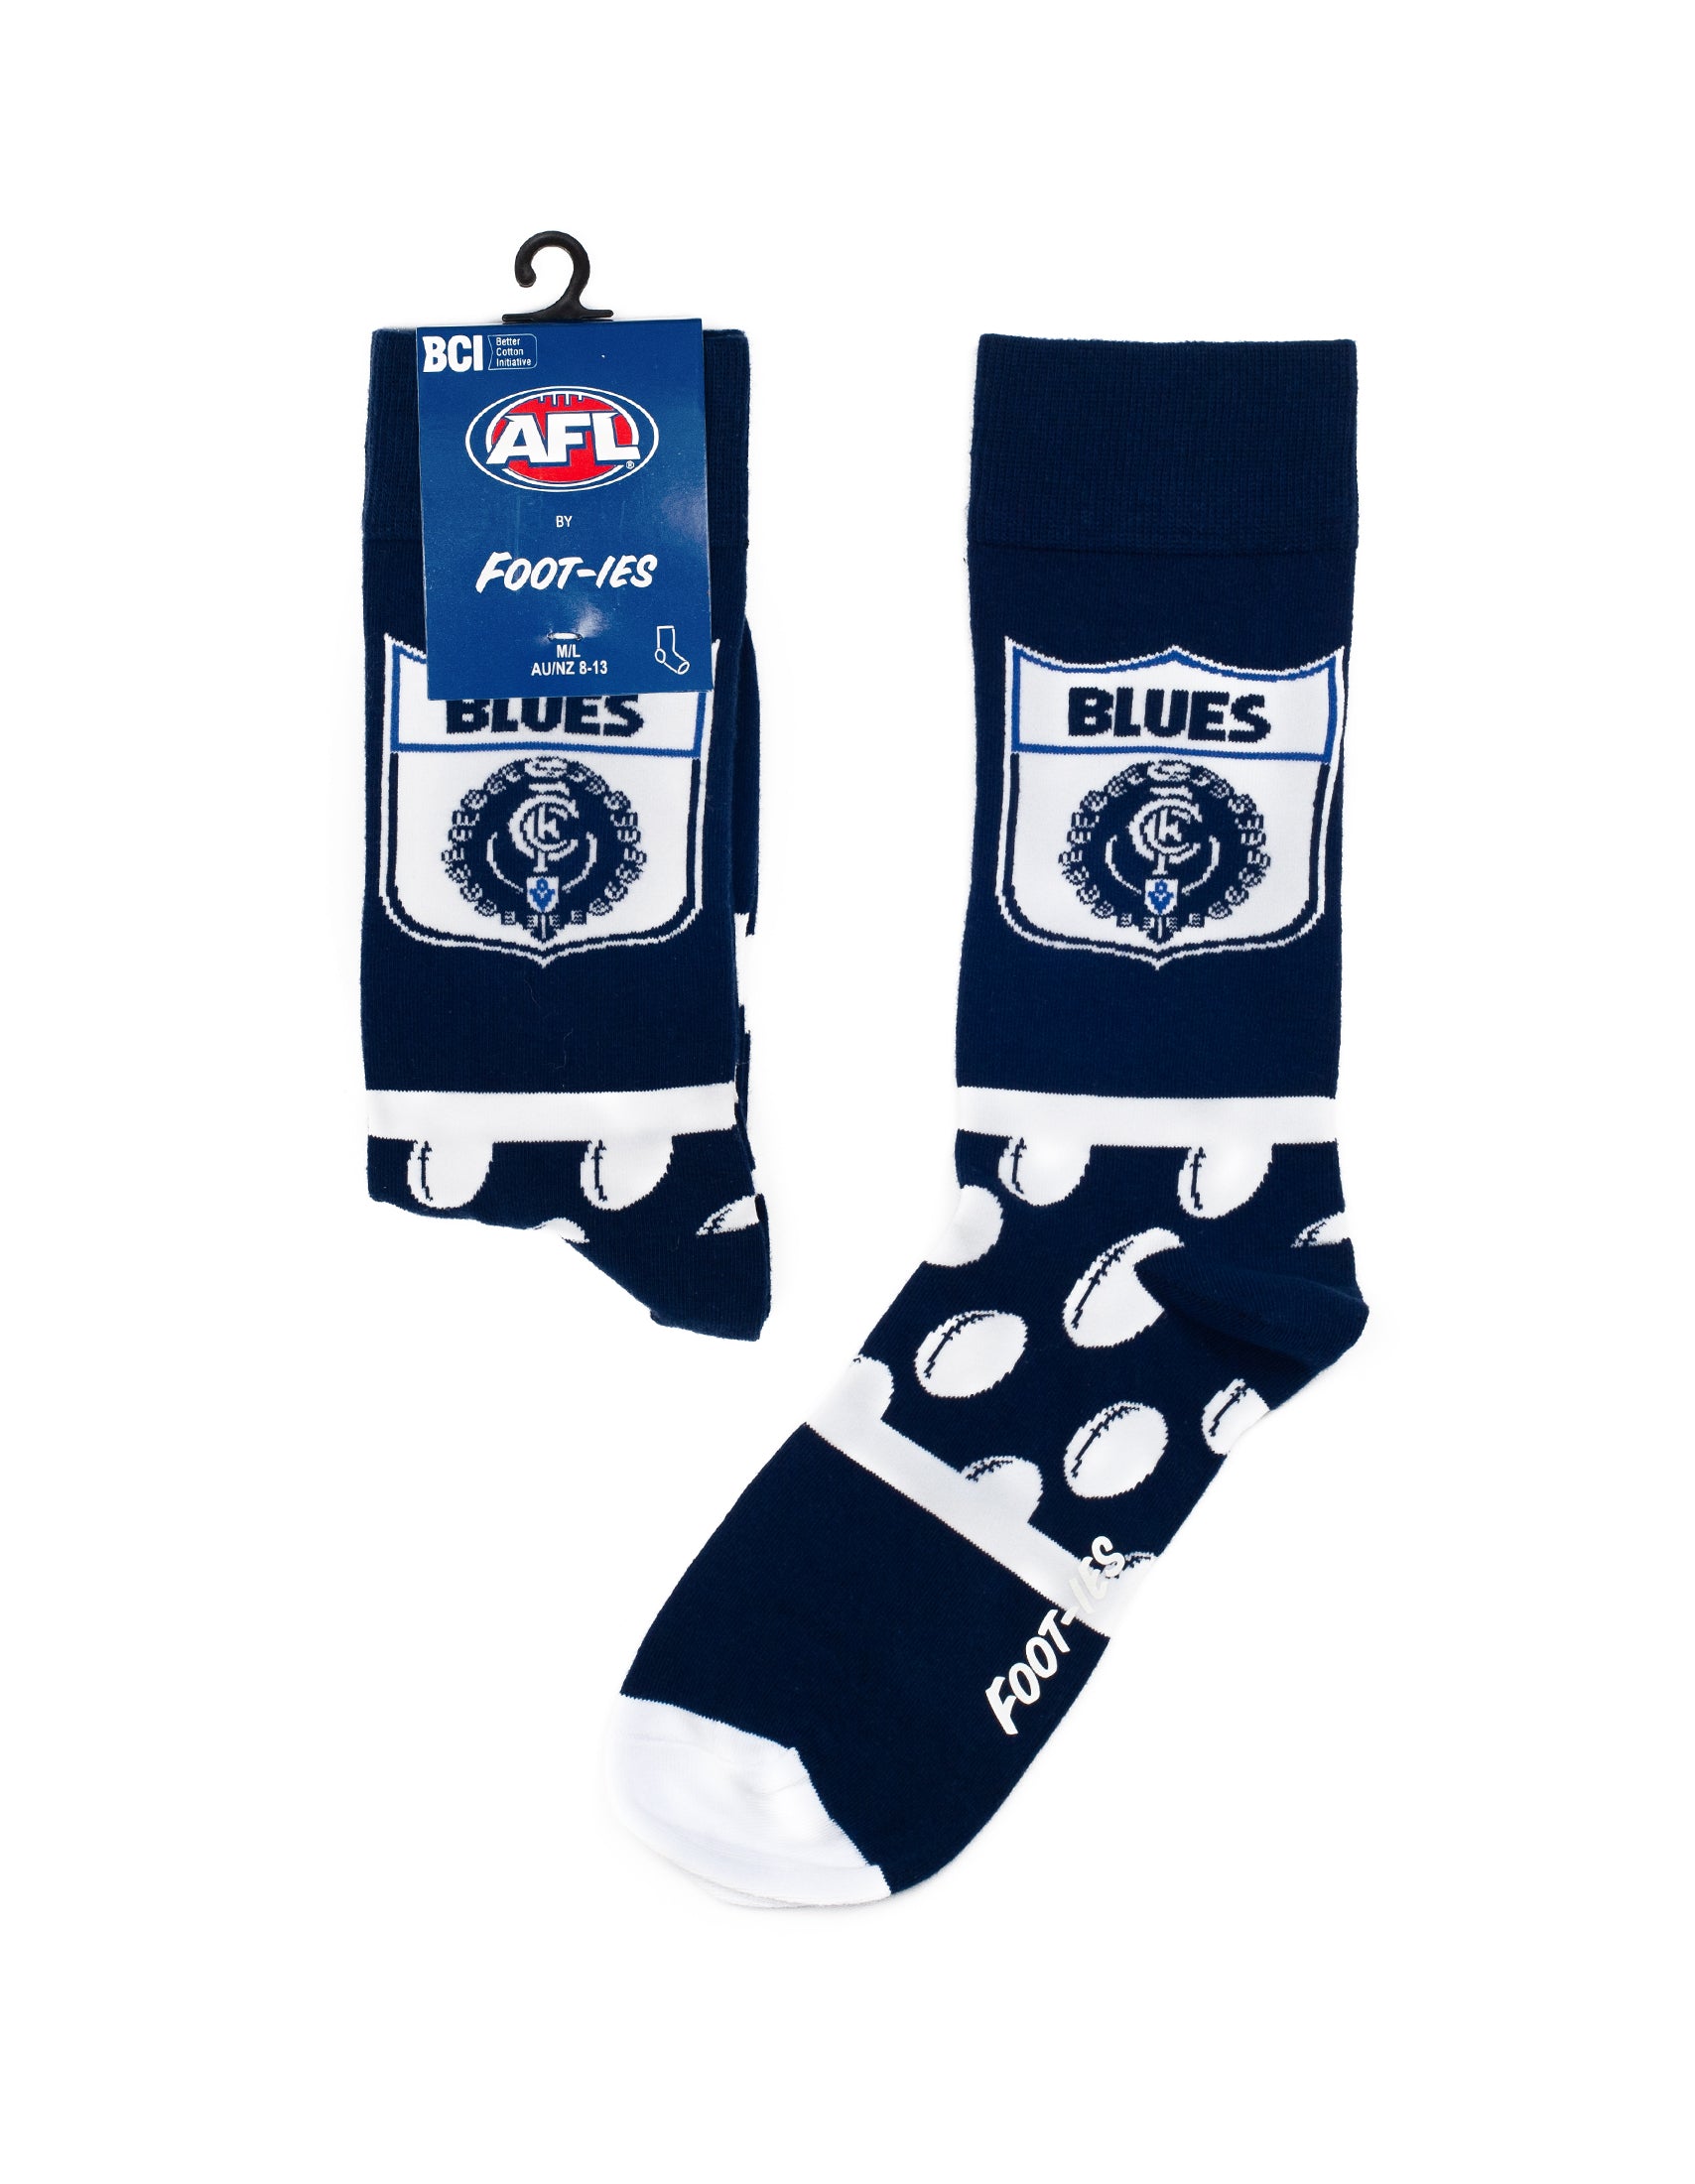 Carlton Blues Heritage AFL Socks